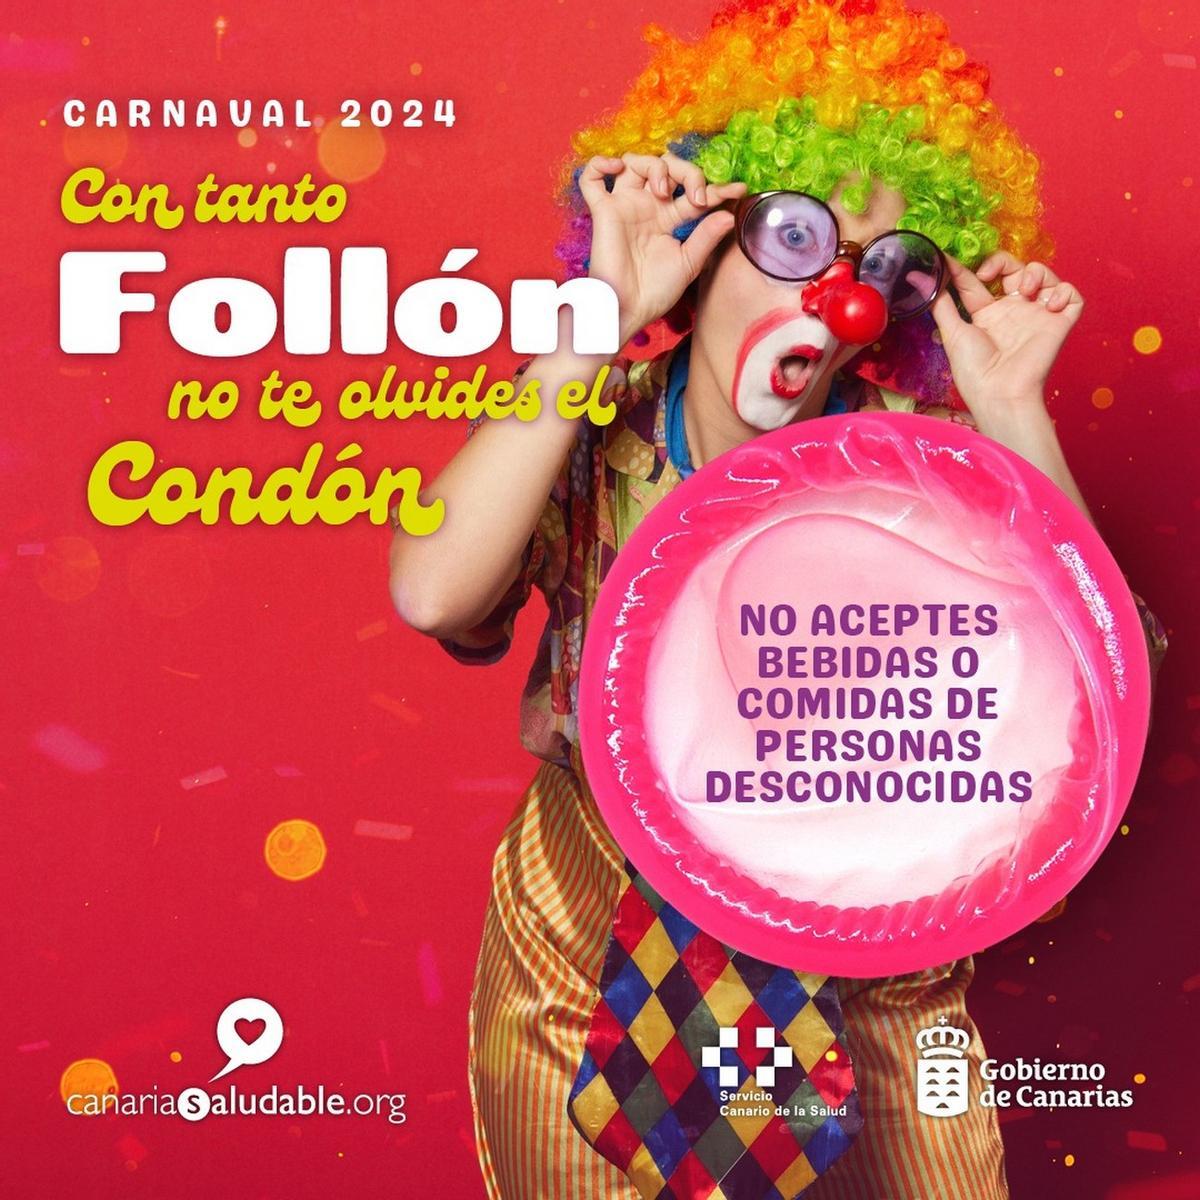 Sanidad pone en marcha una campaña para prevenir infecciones de transmisión sexual durante el carnaval.